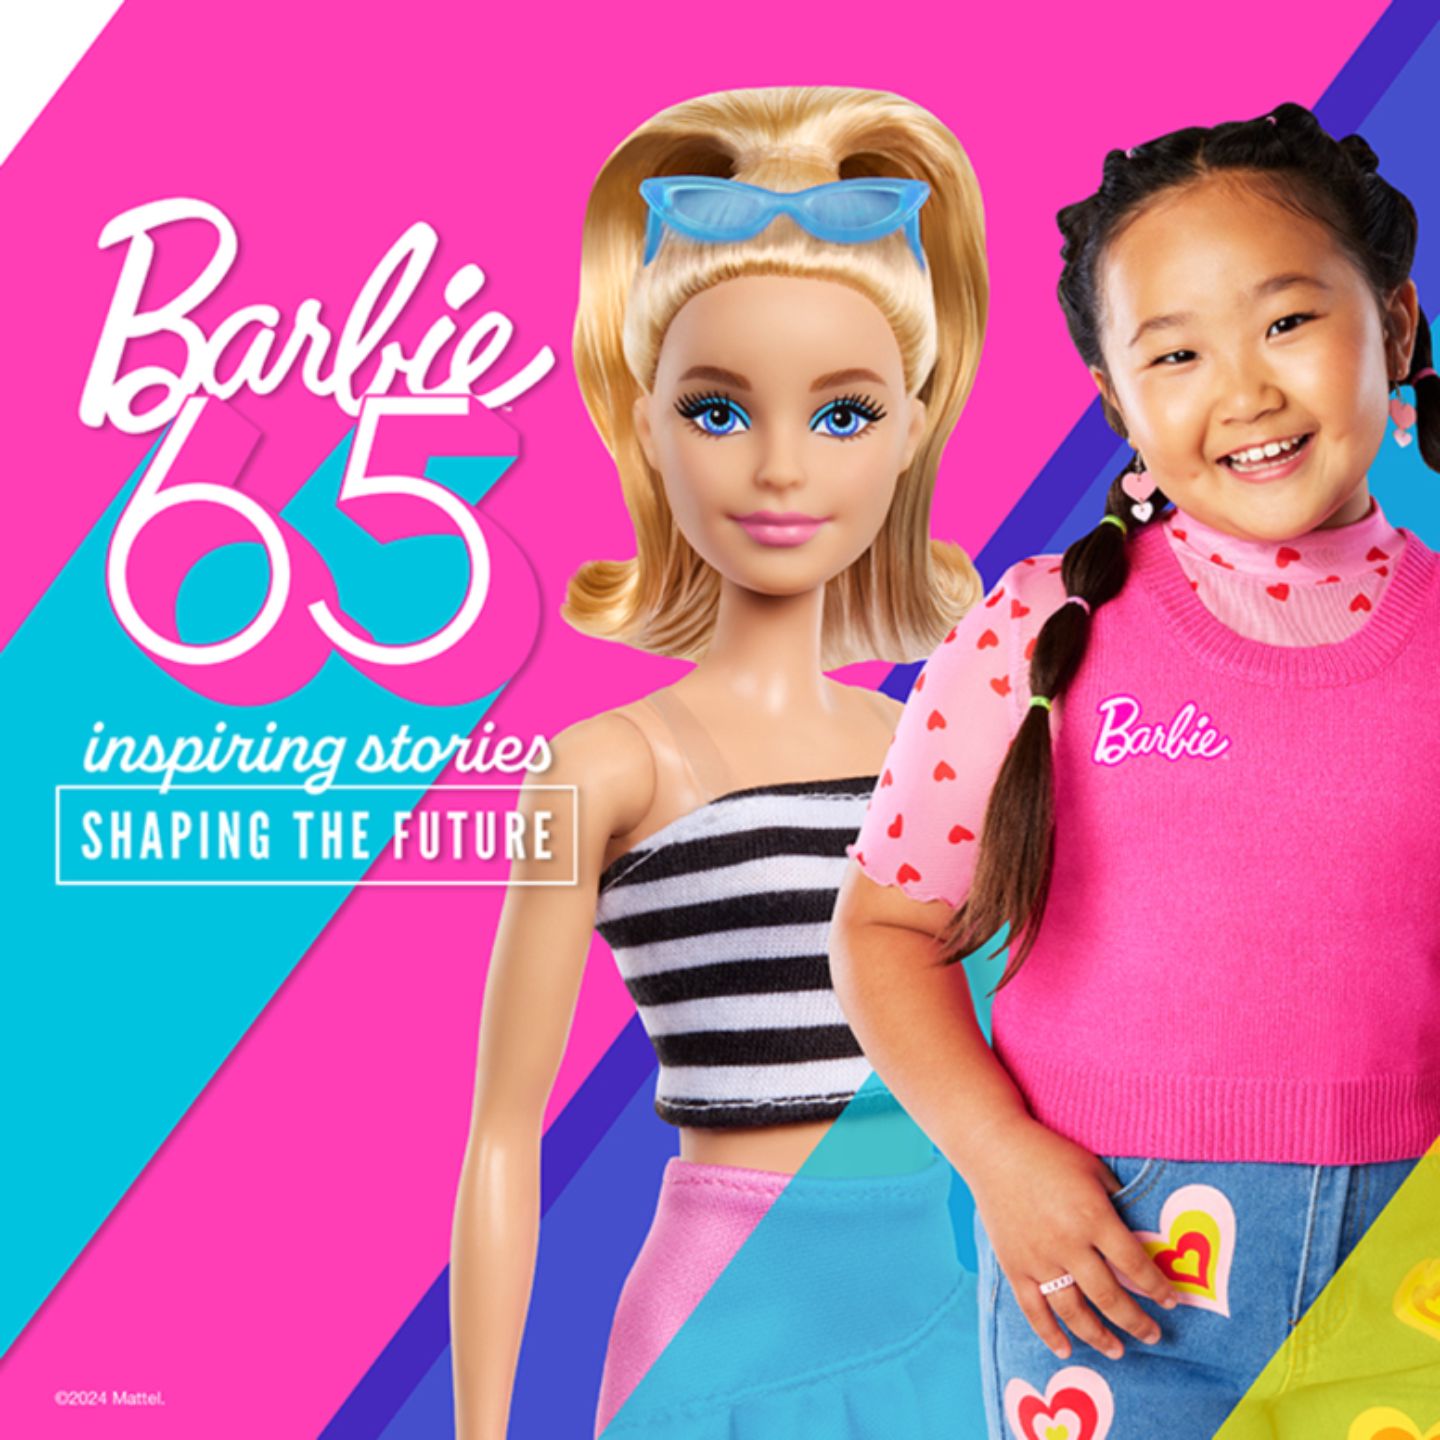 Barbiepop_met_een_meisje_en_de_volgende_boodschap_-_Barbie_65_jaar_-_inspiring_stories_-_shaping_the_future.jpg